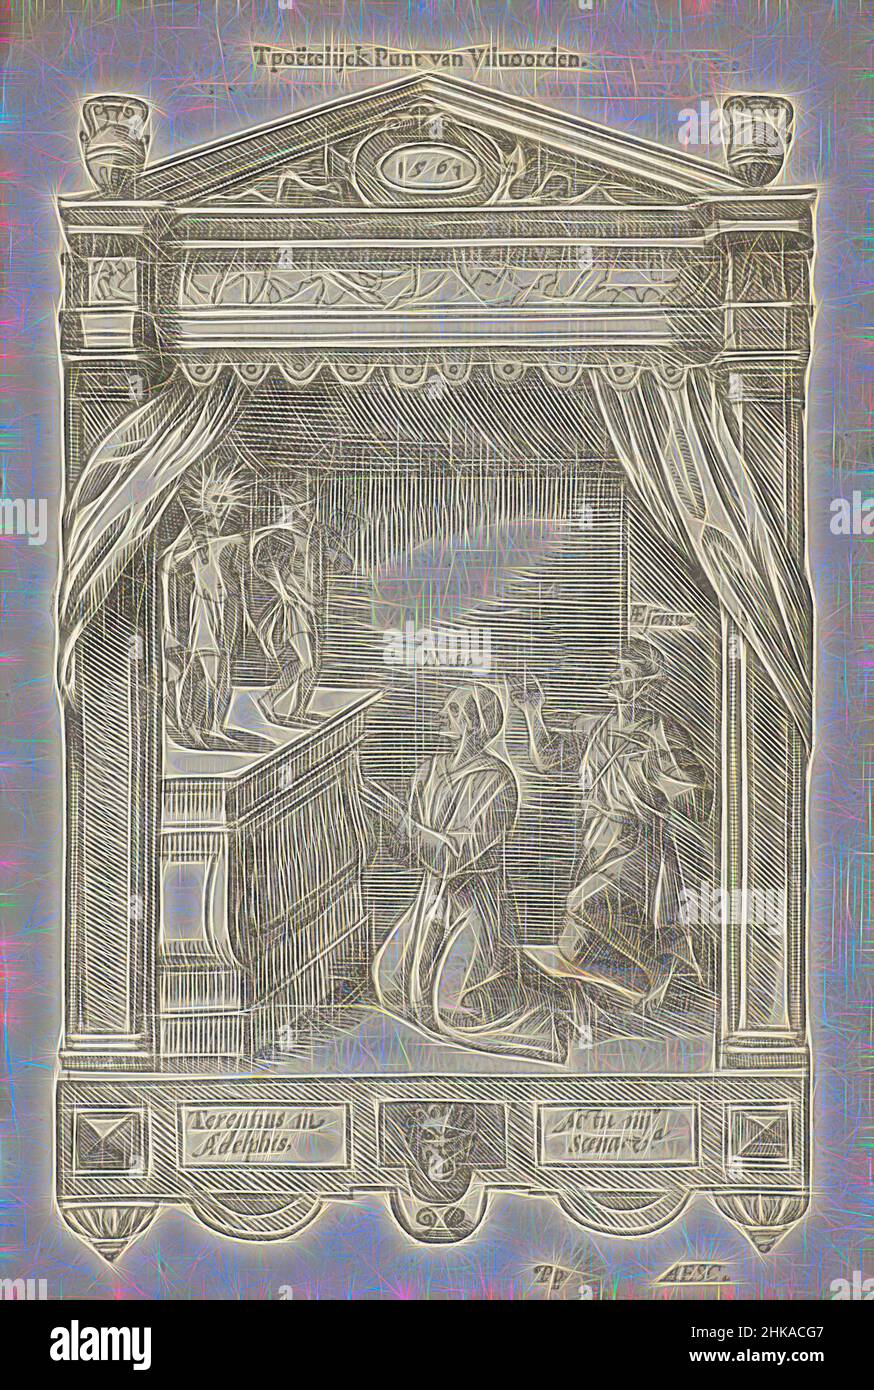 Inspiriert von Blazon von De Christusogen (Diest), 1561, die Christusooghen van Diest, Blazon von De Christusogen, Kammer der Rhetorik in Diest. Für den Landjuweel von Antwerpen 1561., Druckerei:, Antwerpen, 1561 - 1562, Papier, Höhe 217 mm × Breite 153 mm, neu gestaltet von Artotop. Klassische Kunst neu erfunden mit einem modernen Twist. Design von warmen fröhlichen Leuchten der Helligkeit und Lichtstrahl Strahlkraft. Fotografie inspiriert von Surrealismus und Futurismus, umarmt dynamische Energie der modernen Technologie, Bewegung, Geschwindigkeit und Kultur zu revolutionieren Stockfoto